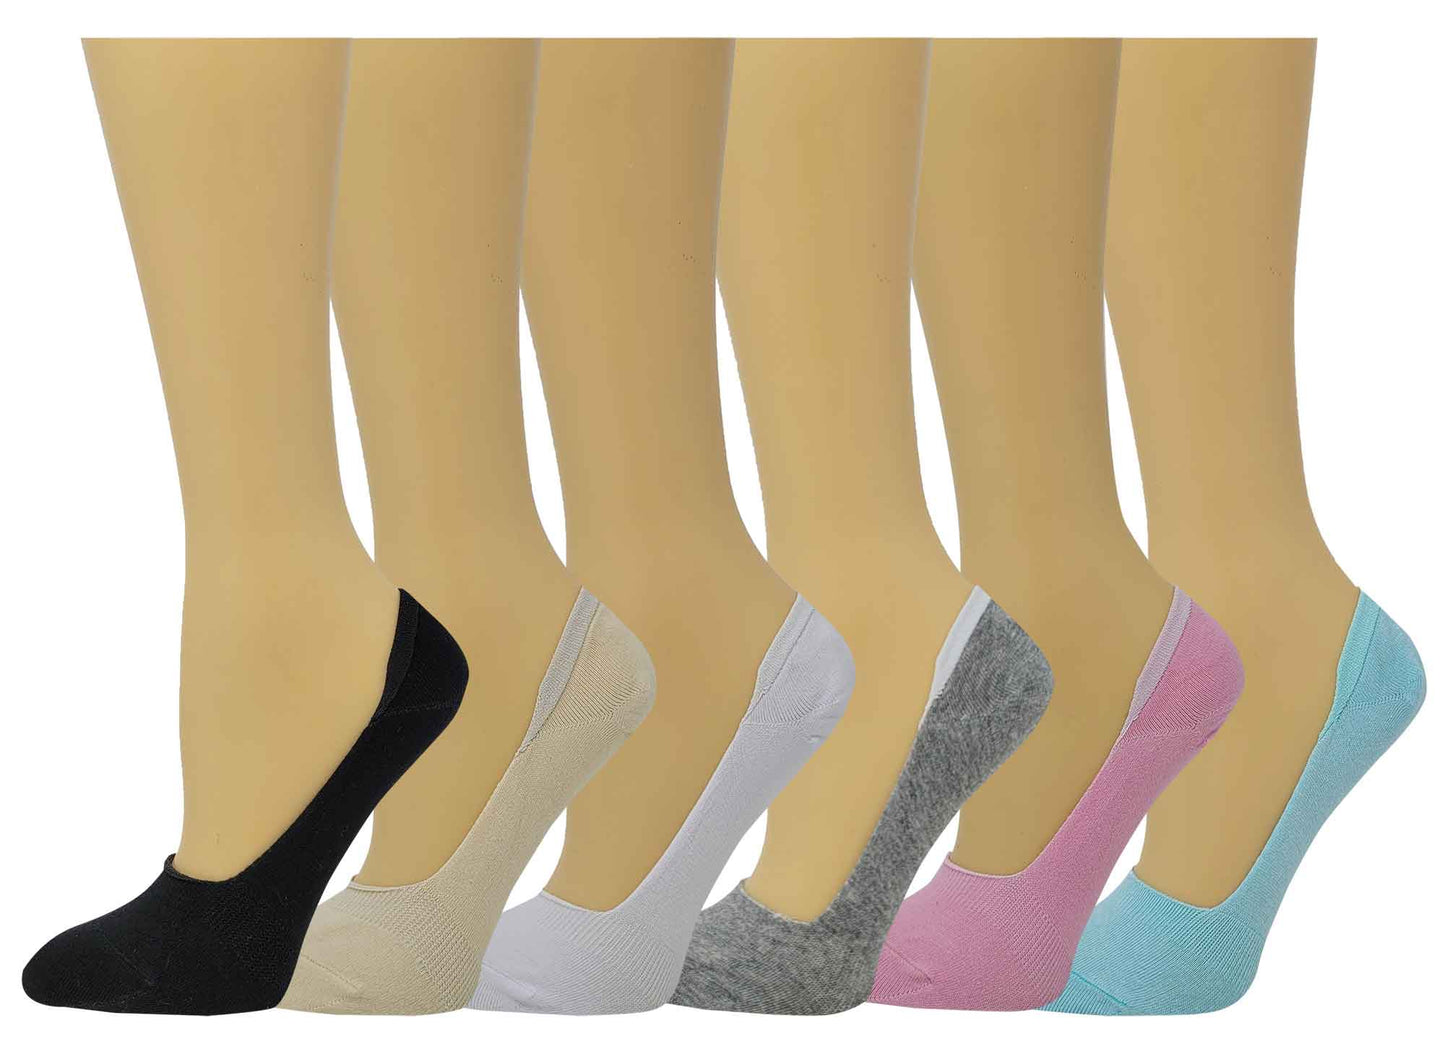 SUMONA Women's Cotton Spandex Casual Invisible Low Cut Non-Slip No Show Socks